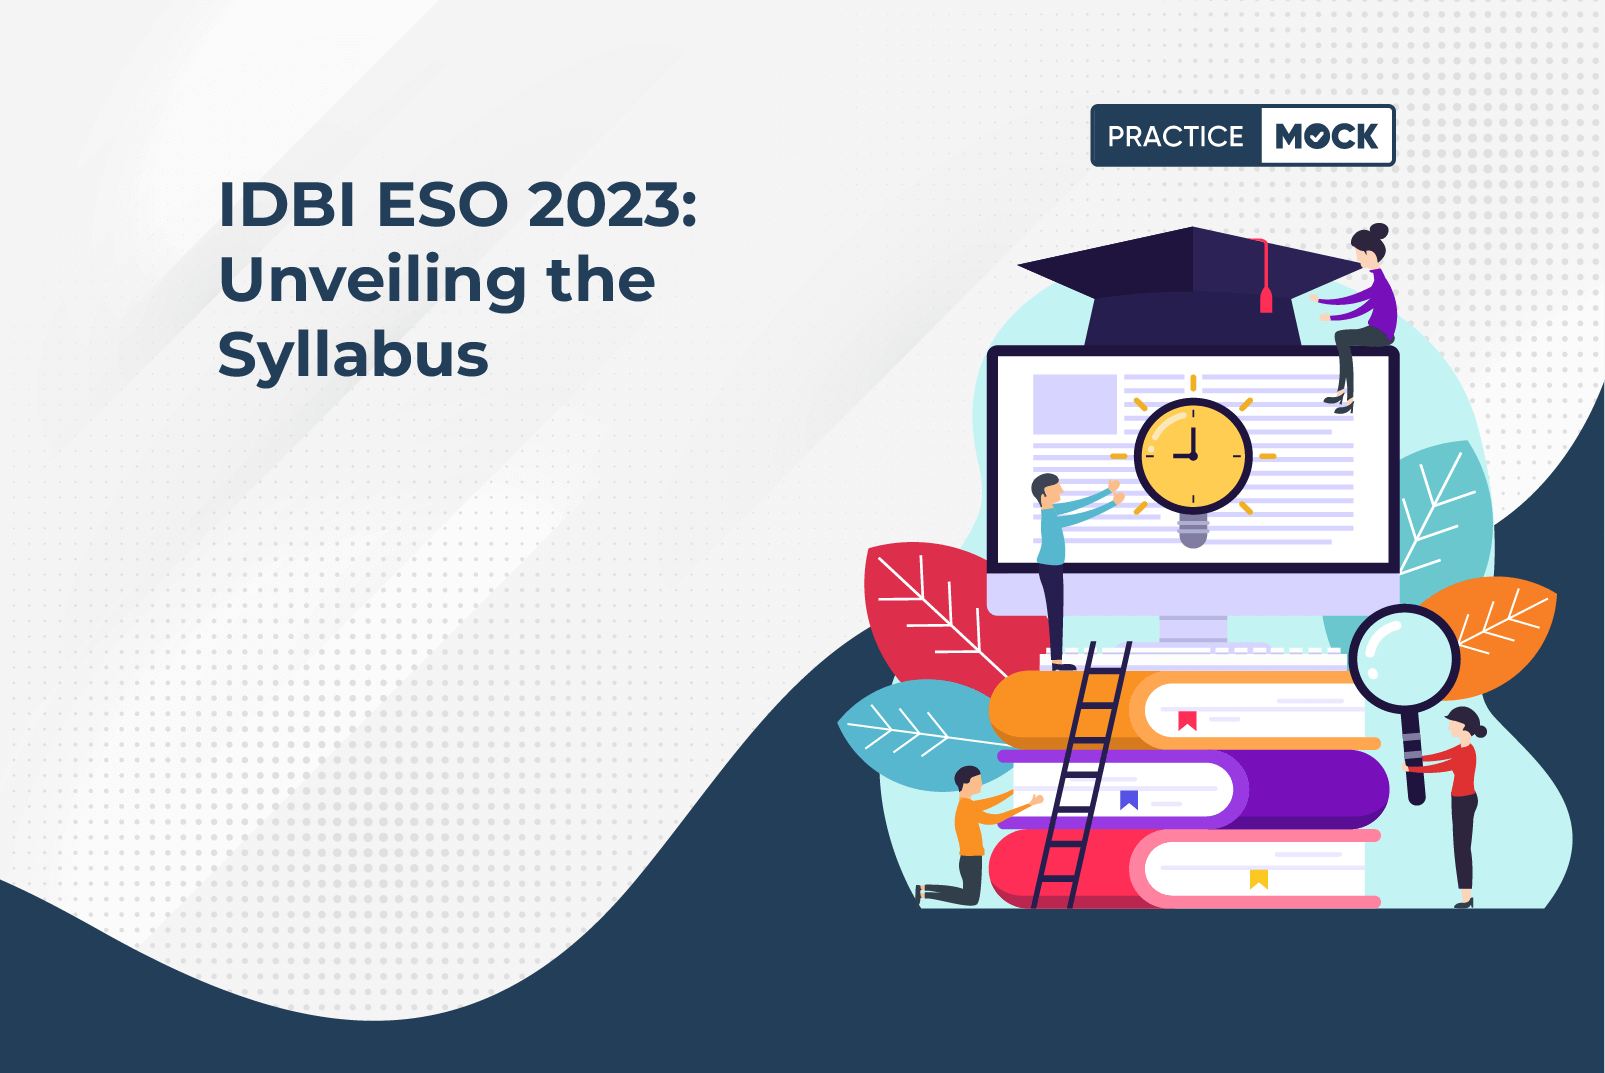 IDBI ESO 2023: Unveiling the Syllabus